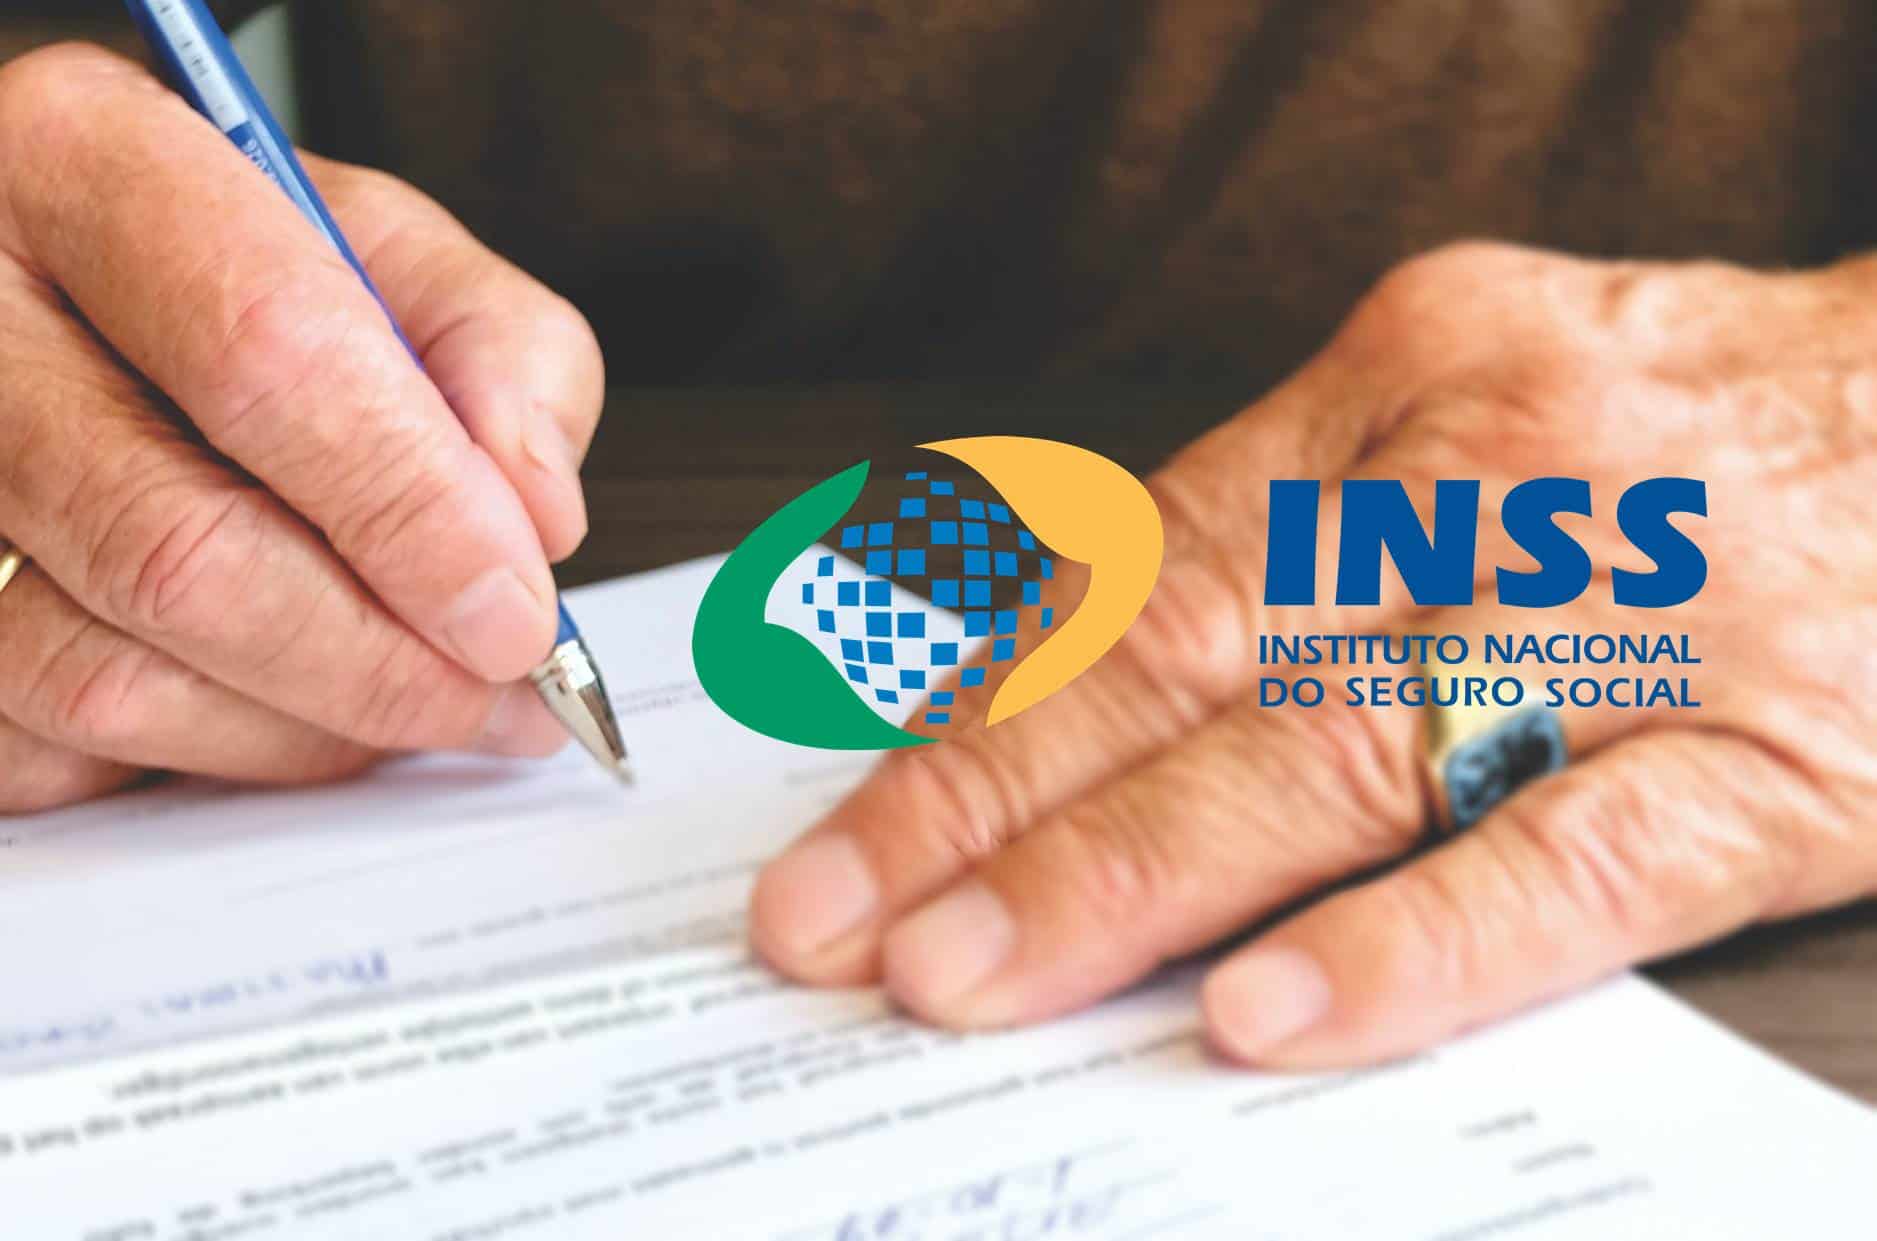 INSS Revisa Pagamentos de aposentados e pensionistas antes de enviar carta